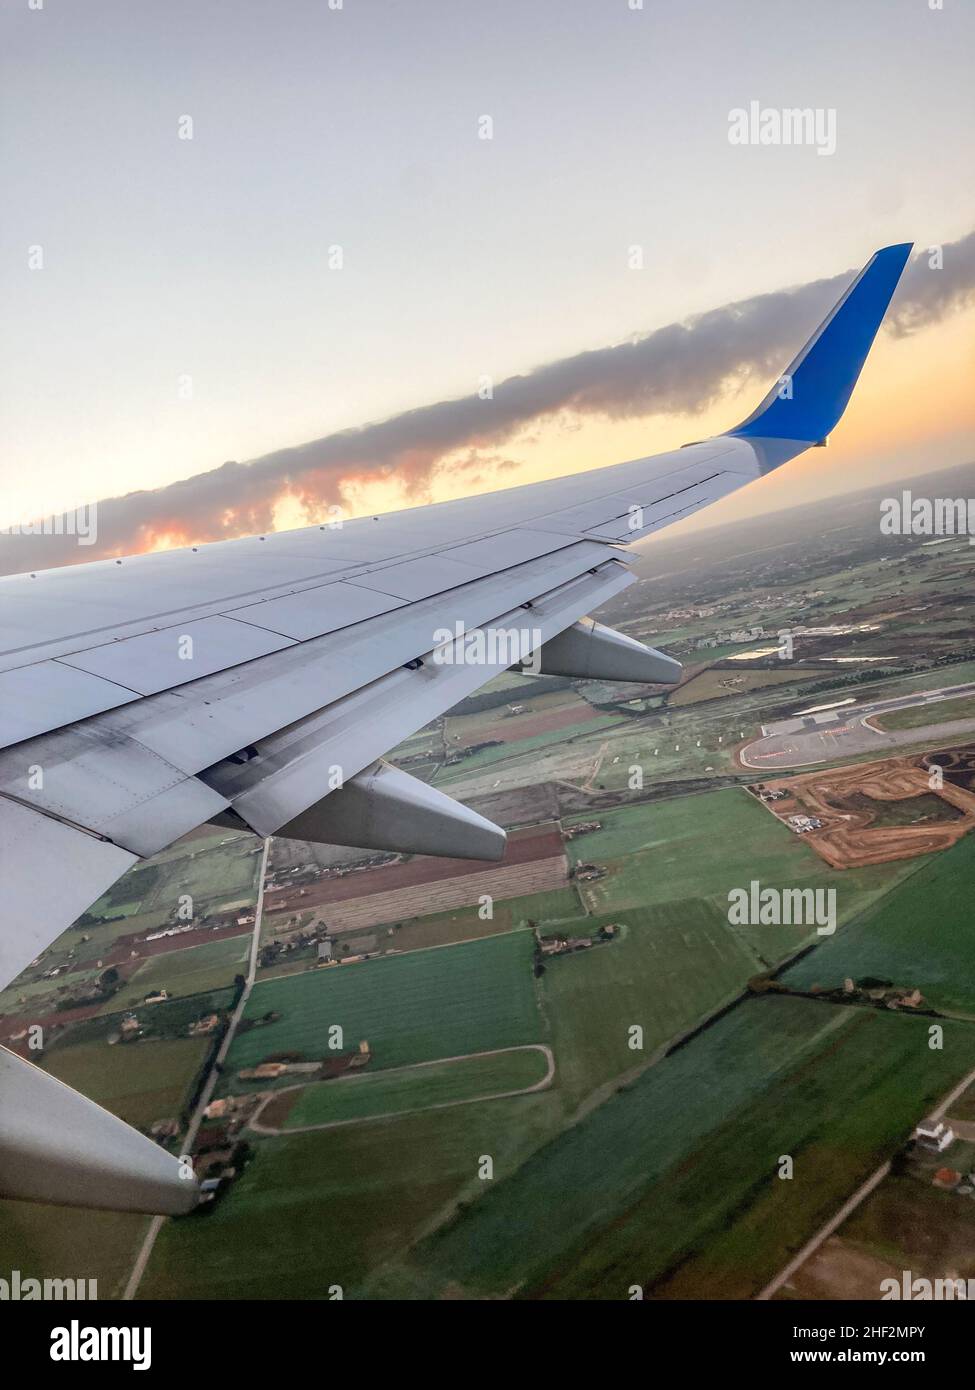 Immagine verticale dell'ala di un velivolo commerciale. Foto scattata dall'interno dell'aereo. Foto Stock